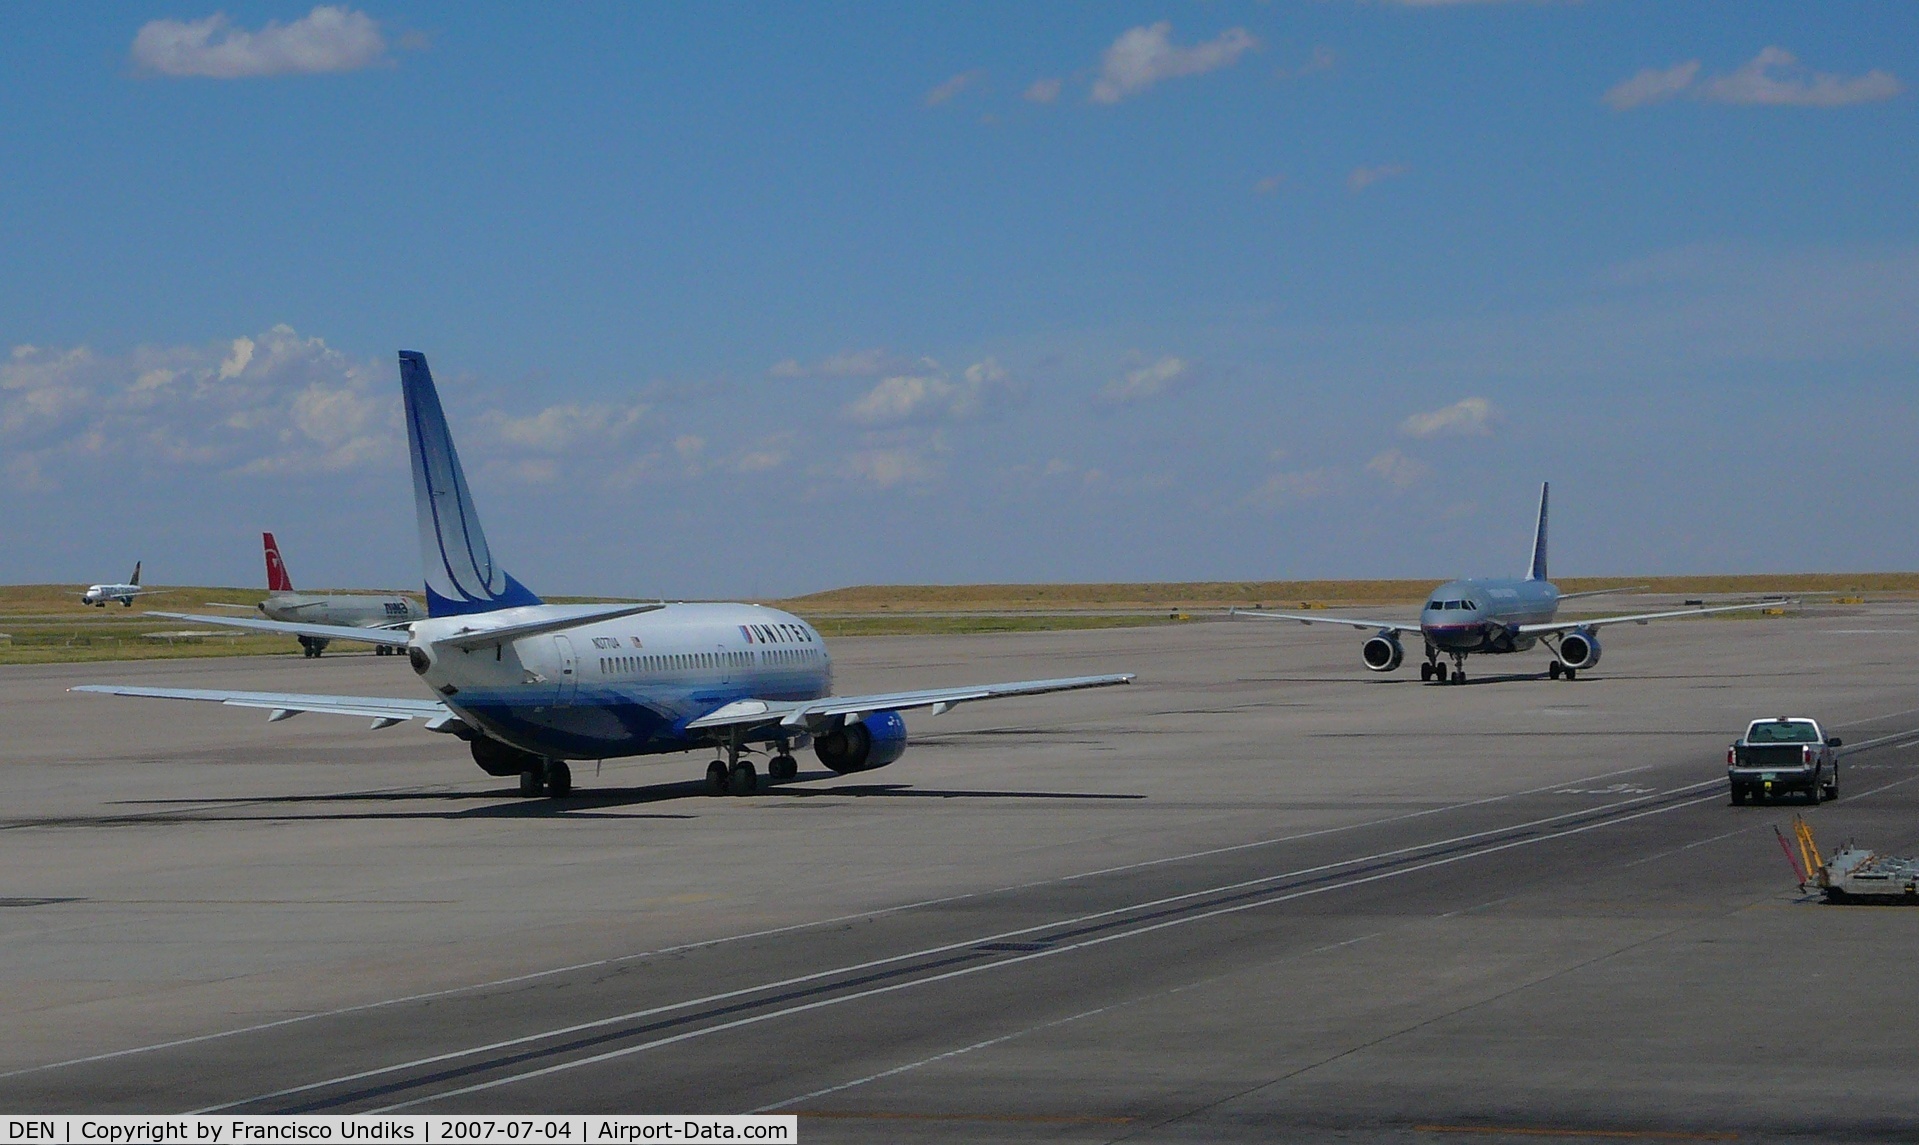 Denver International Airport (DEN) - B737  A319  showdown.